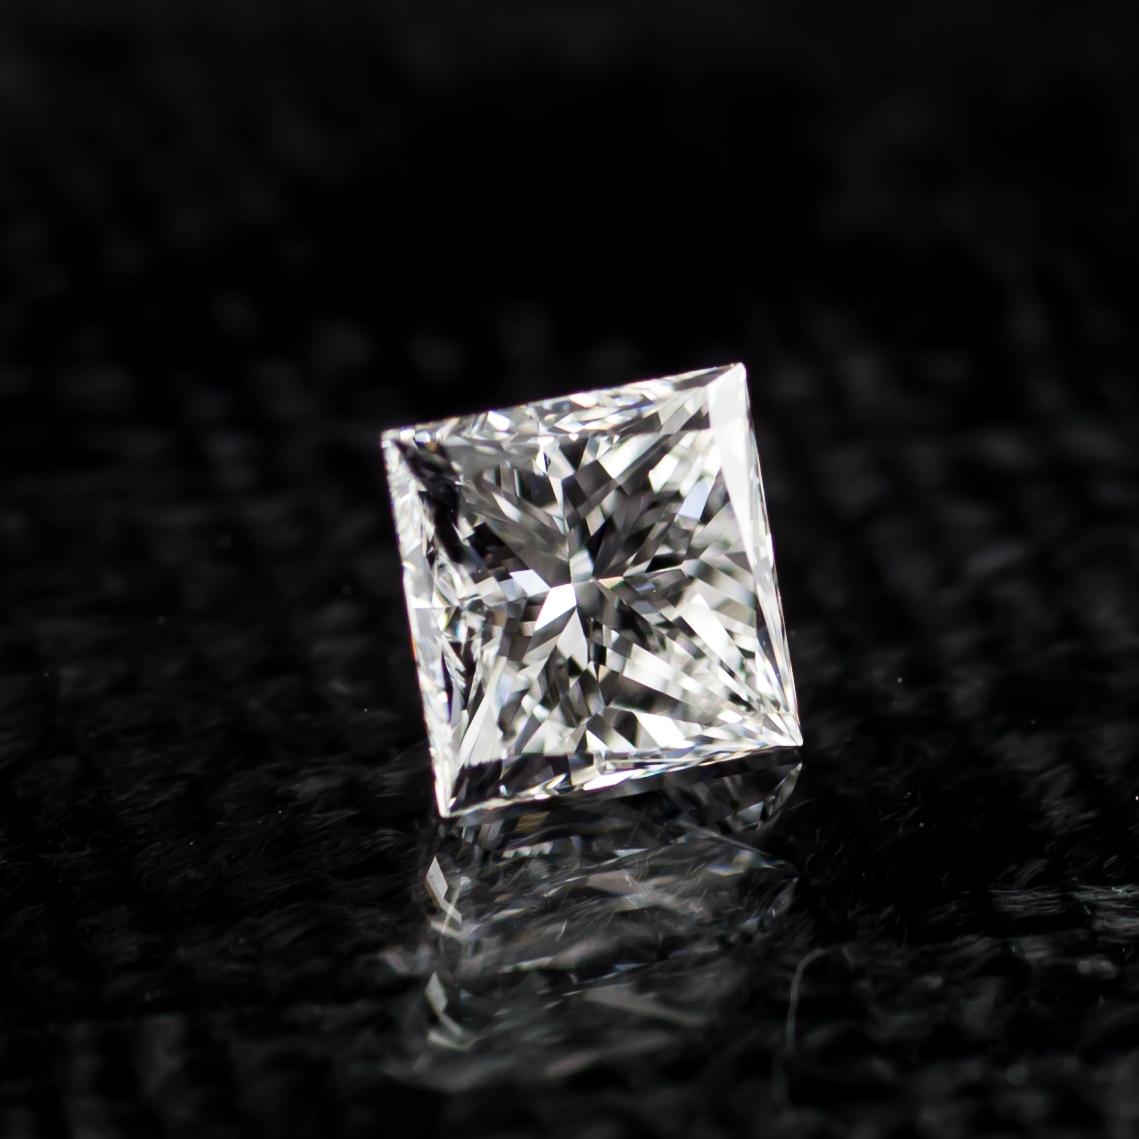 Informations générales sur le diamant
Taille du diamant : Brilliante modifiée carrée
Dimensions : 6.67  x  6.63  -  4,17 mm

Résultats de la classification des diamants
Poids en carats : 0,76
Grade de couleur : E
Grade de clarté : VS1

Informations